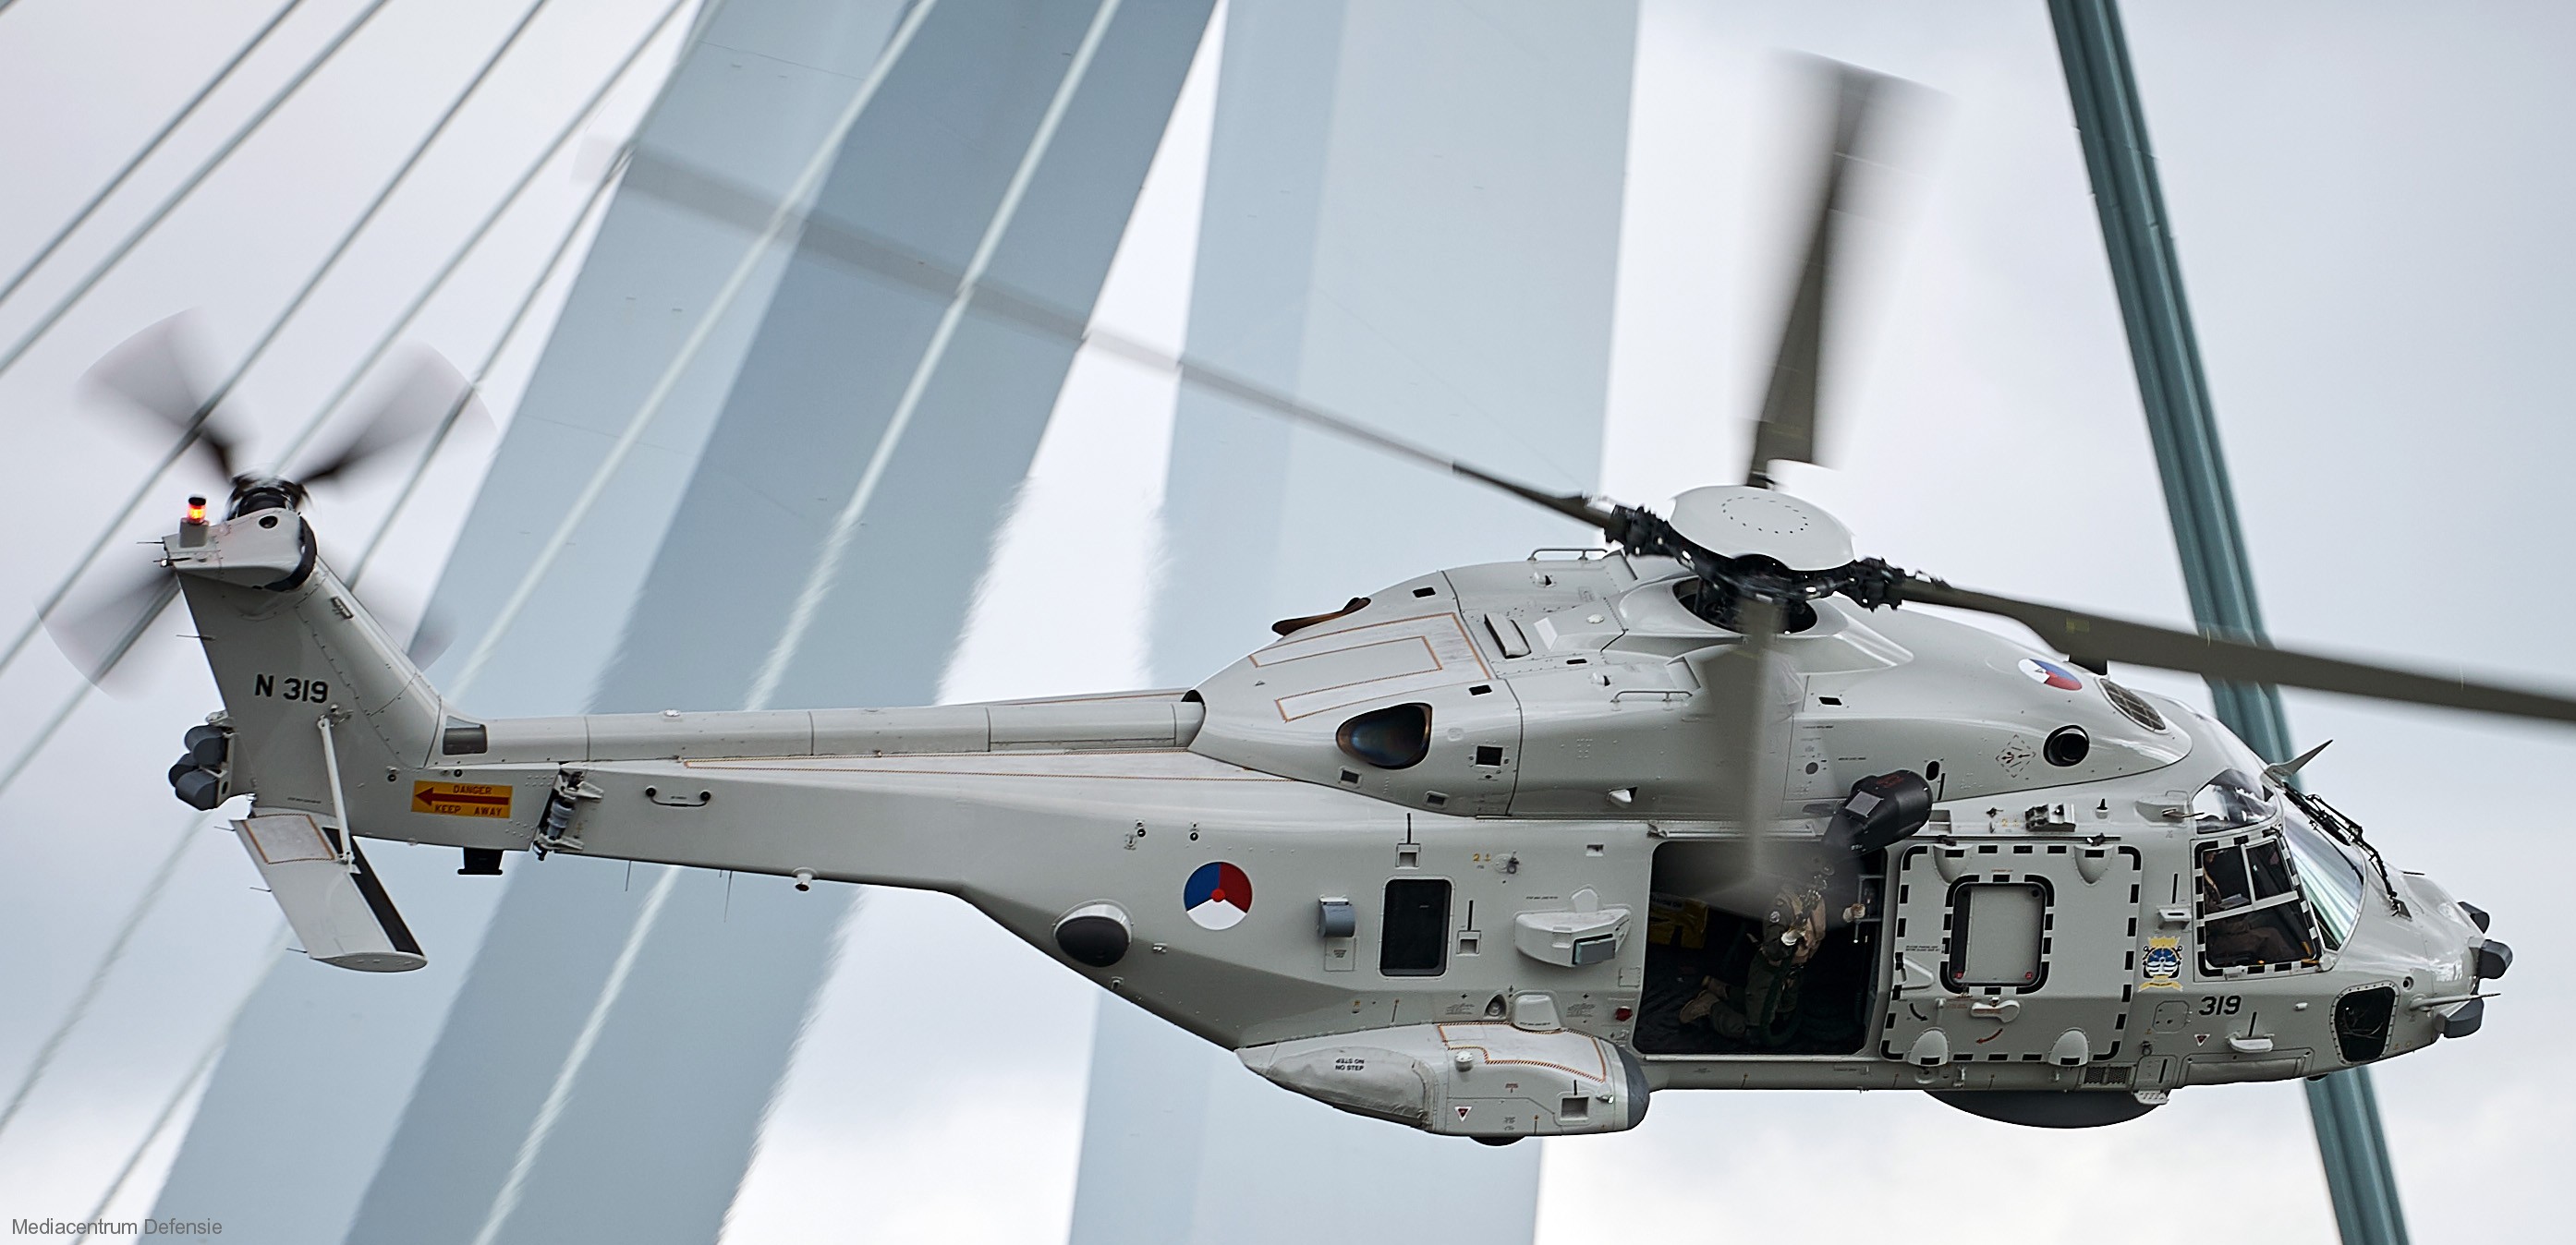 nh90 nfh helicopter royal netherlands navy koninklijke marine n-319 03